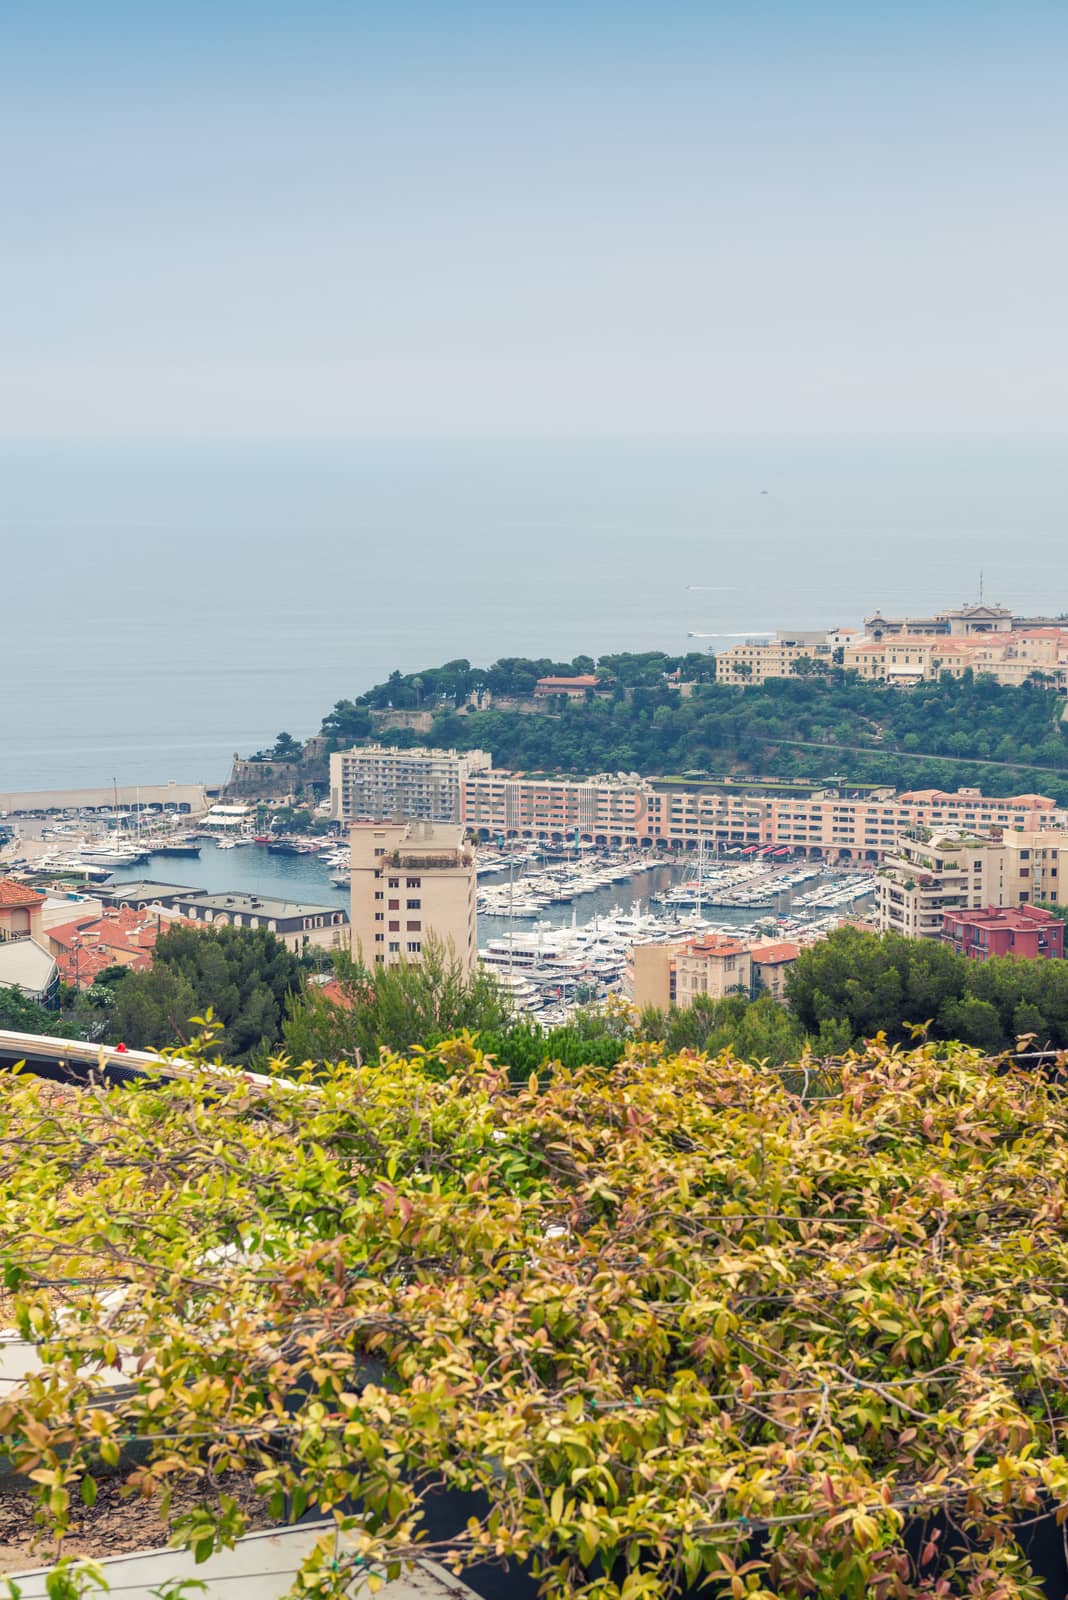 Buildings of Monte Carlo - Monaco, France by jovannig